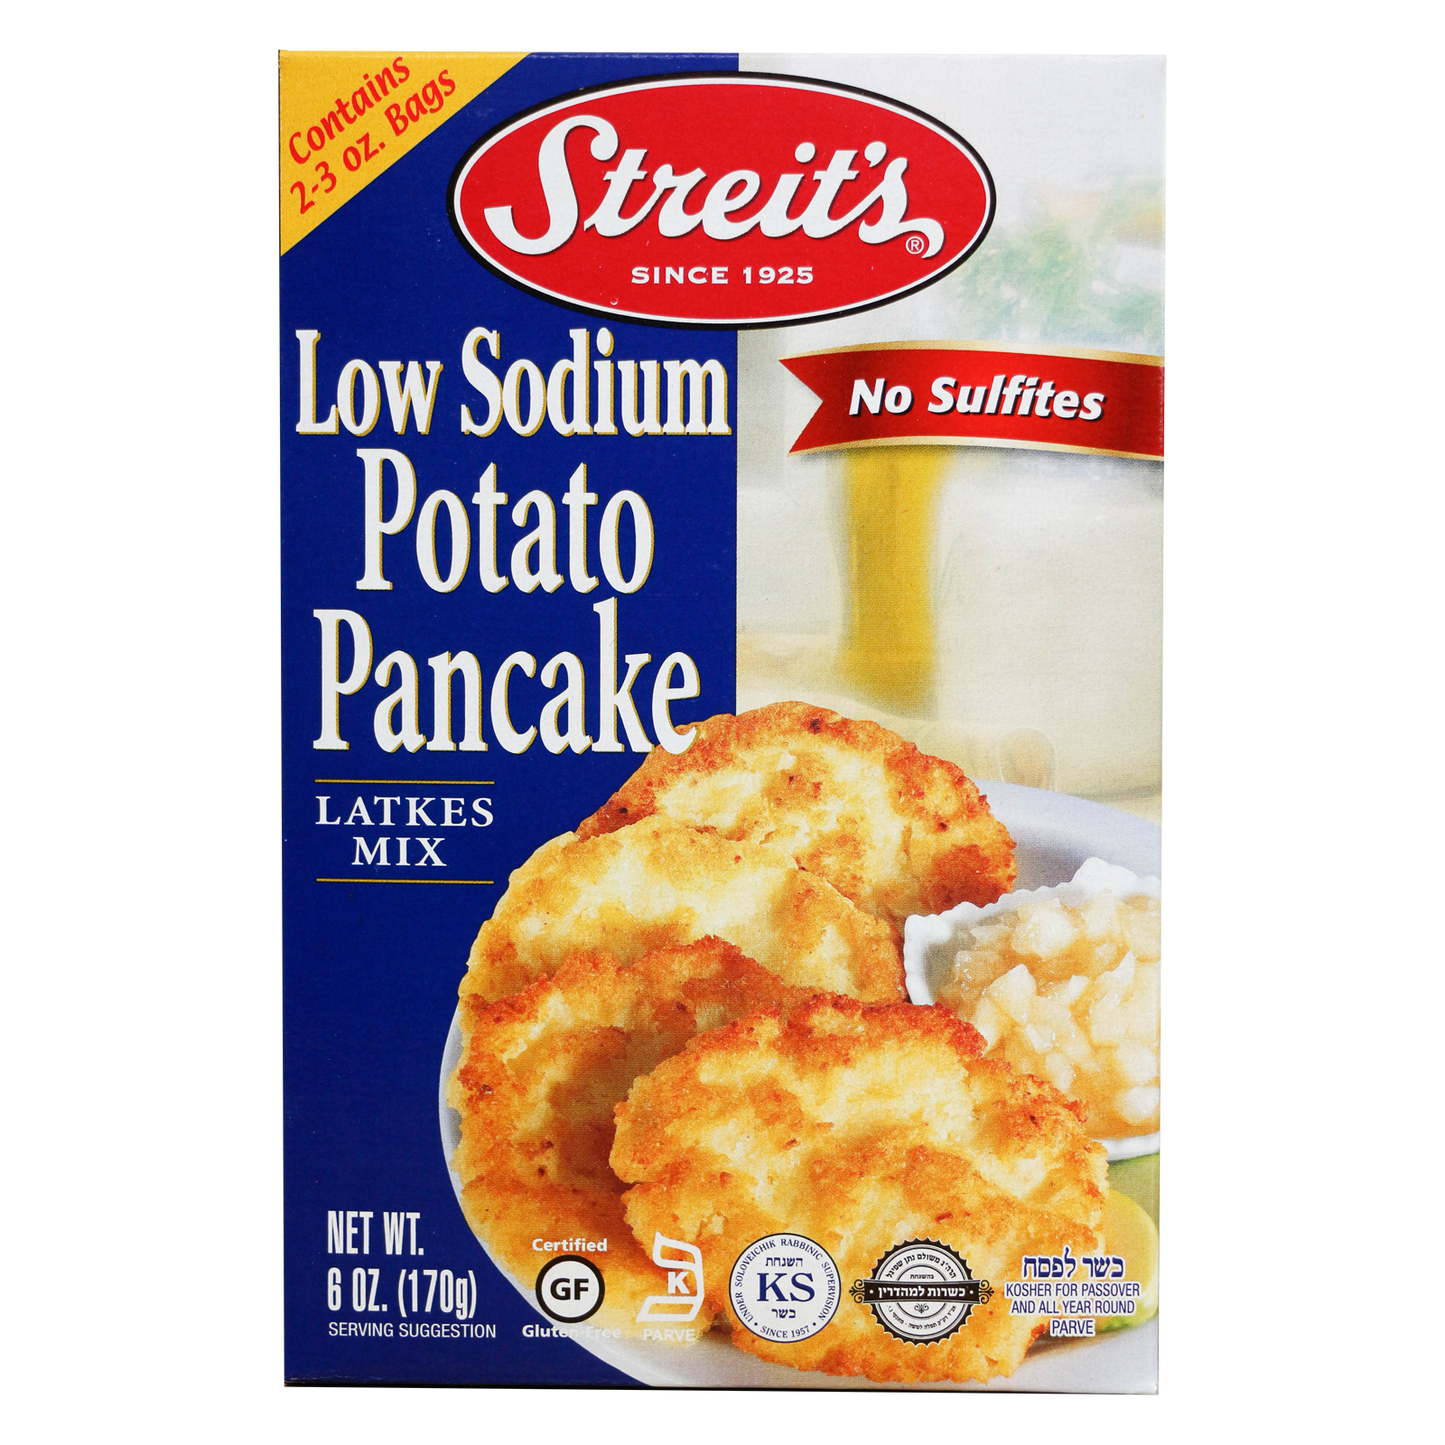 Streit's - Low Sodium Potato Pancake Mix (6 oz)